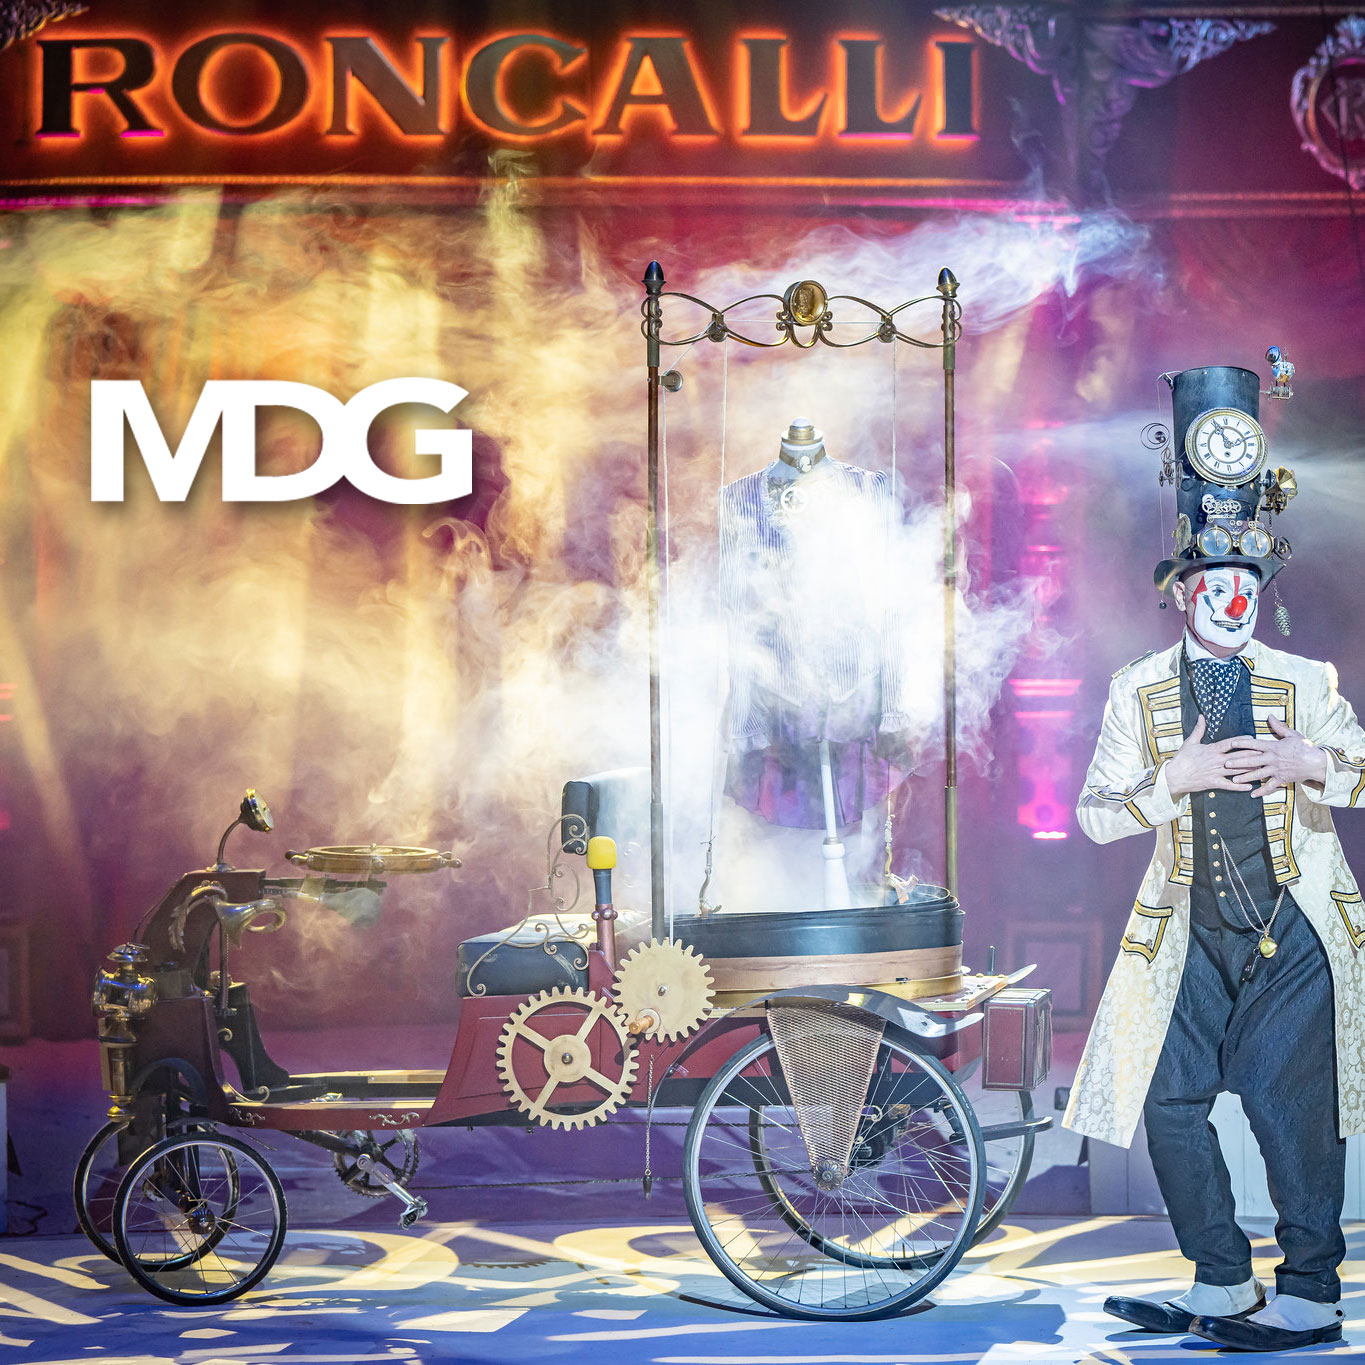 MDG sorgt mit Haze und Bodennebel für Atmosphäre im Circus Roncalli